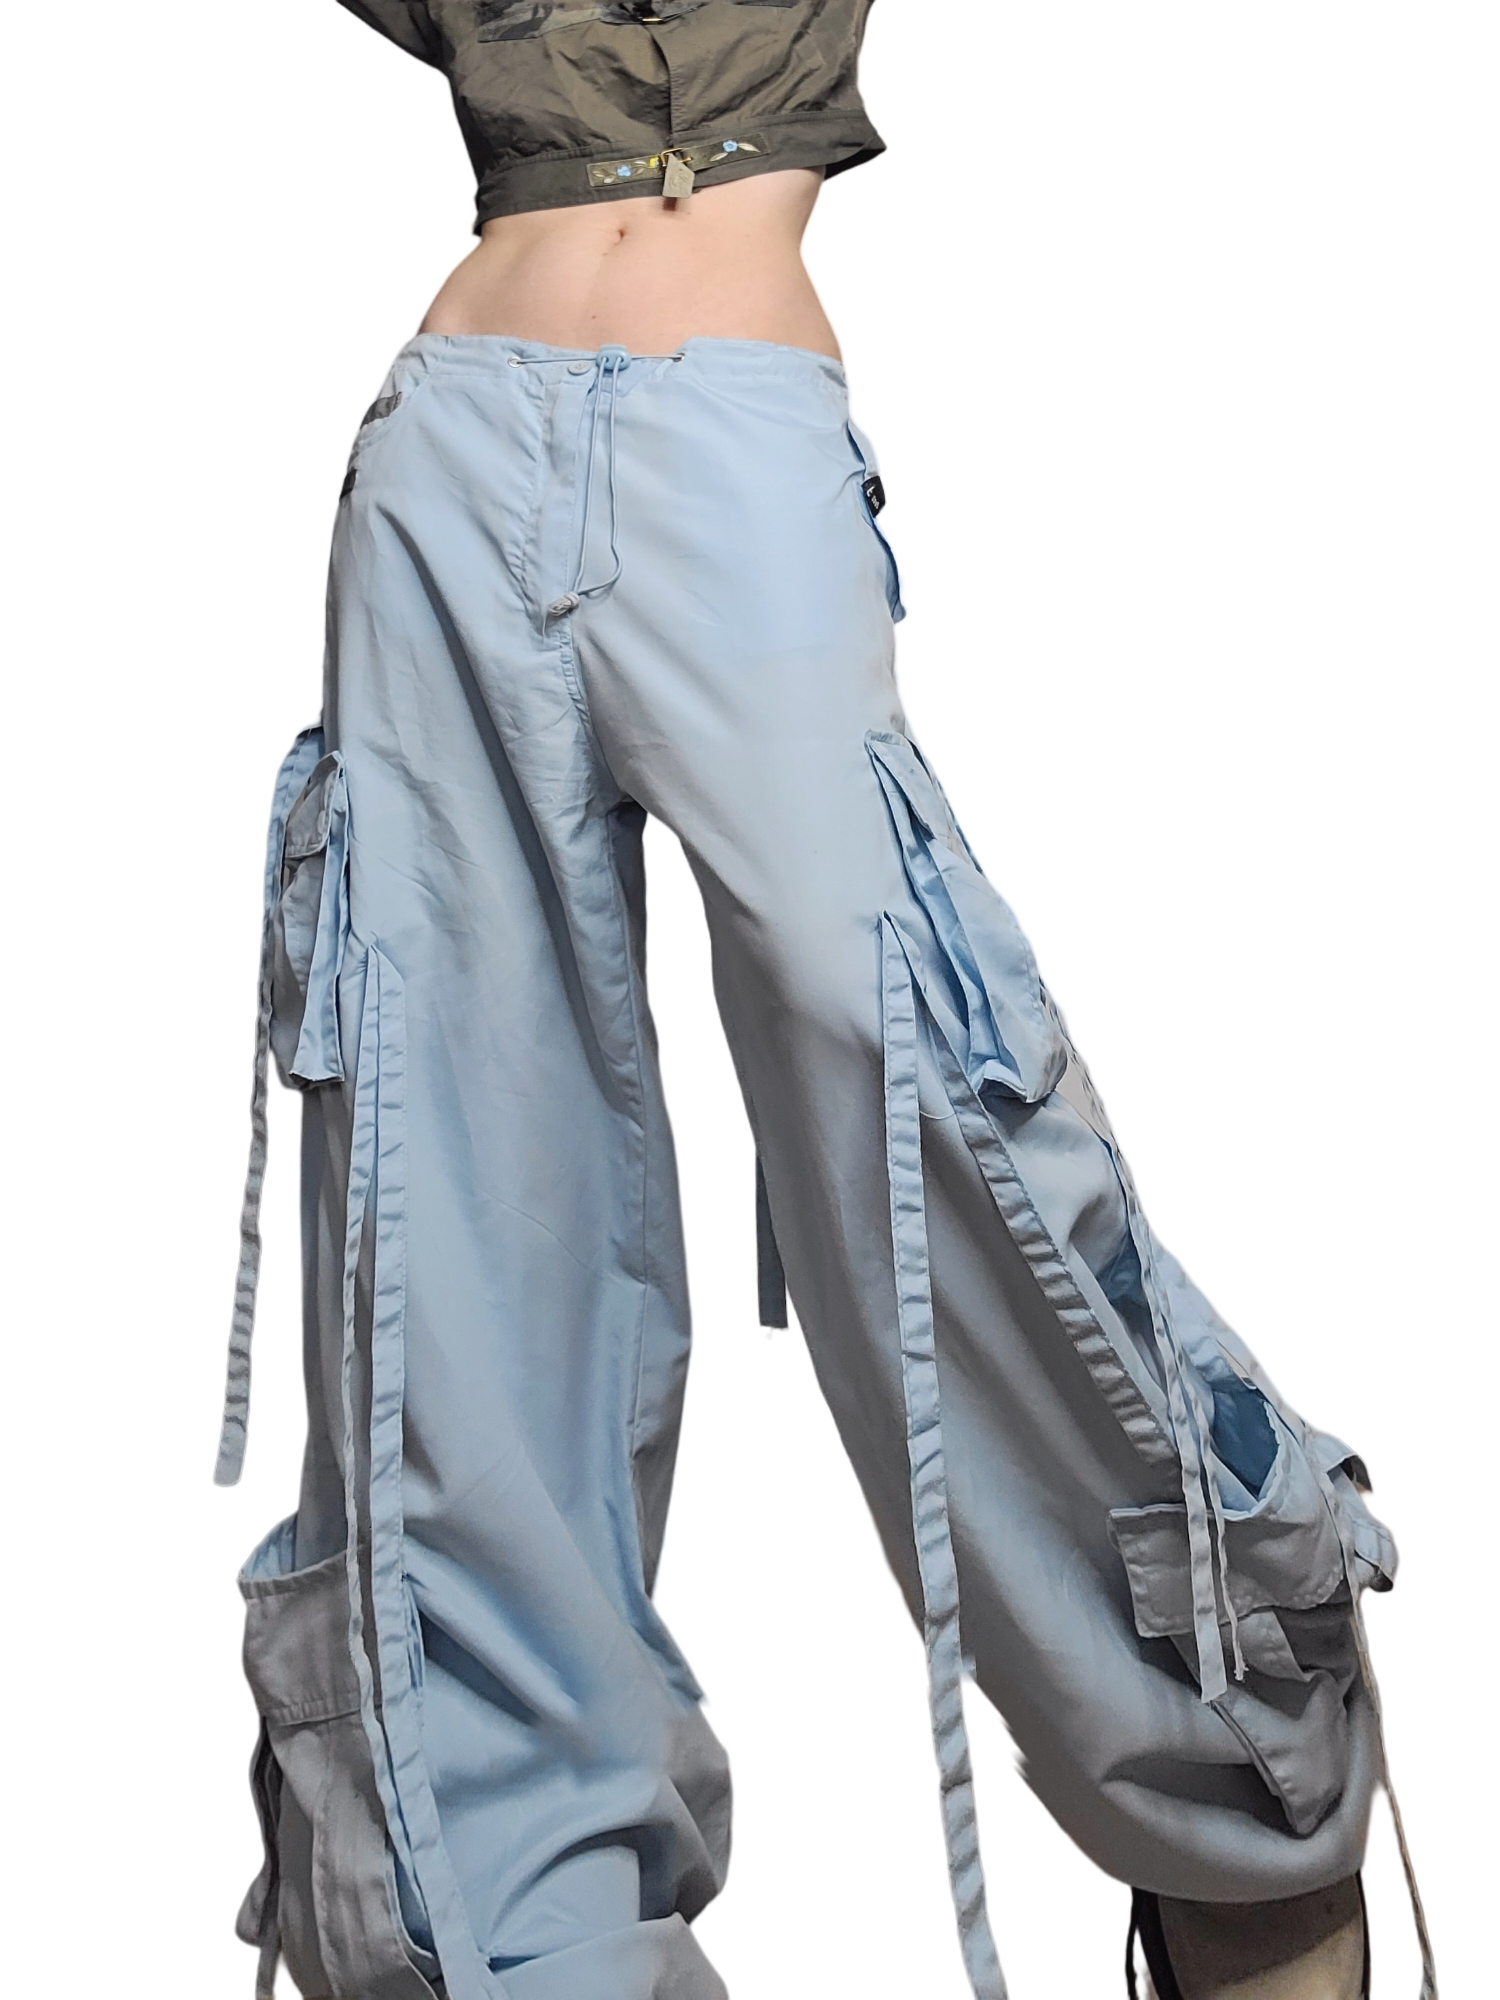 Parachute pants cargo baggy oversize 90s bleu sangles scratch ficelle techwear sportwear gorpcore hiphop